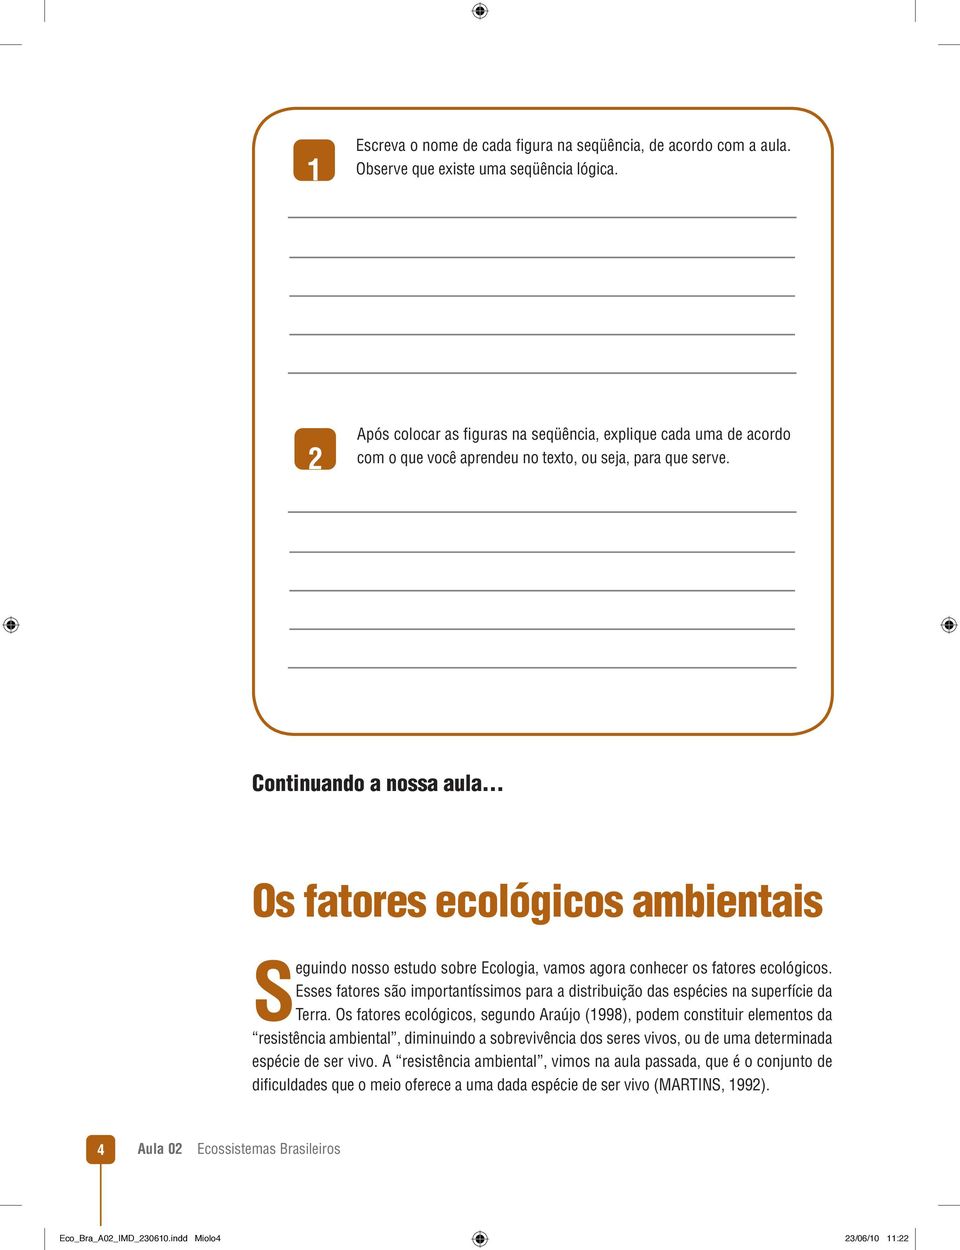 .. Os fatores ecológicos ambientais Seguindo nosso estudo sobre Ecologia, vamos agora conhecer os fatores ecológicos.